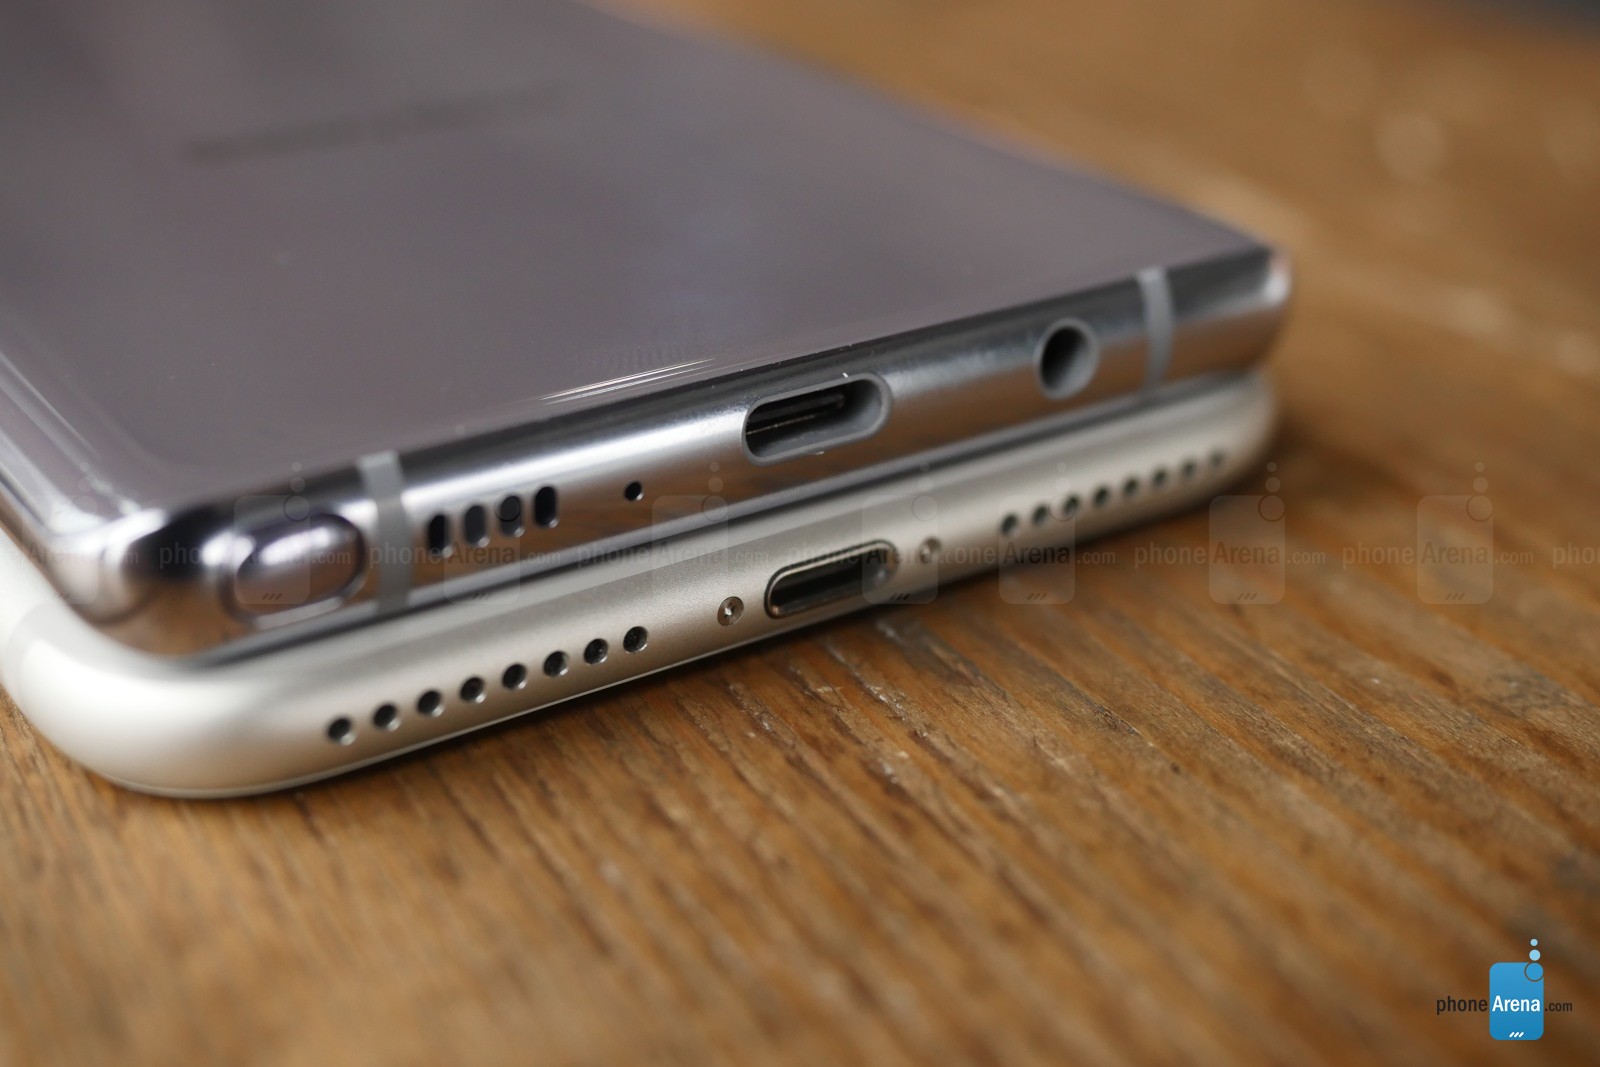 Samsung Galaxy Note 8 vergelijking iPhone 7 Plus 4